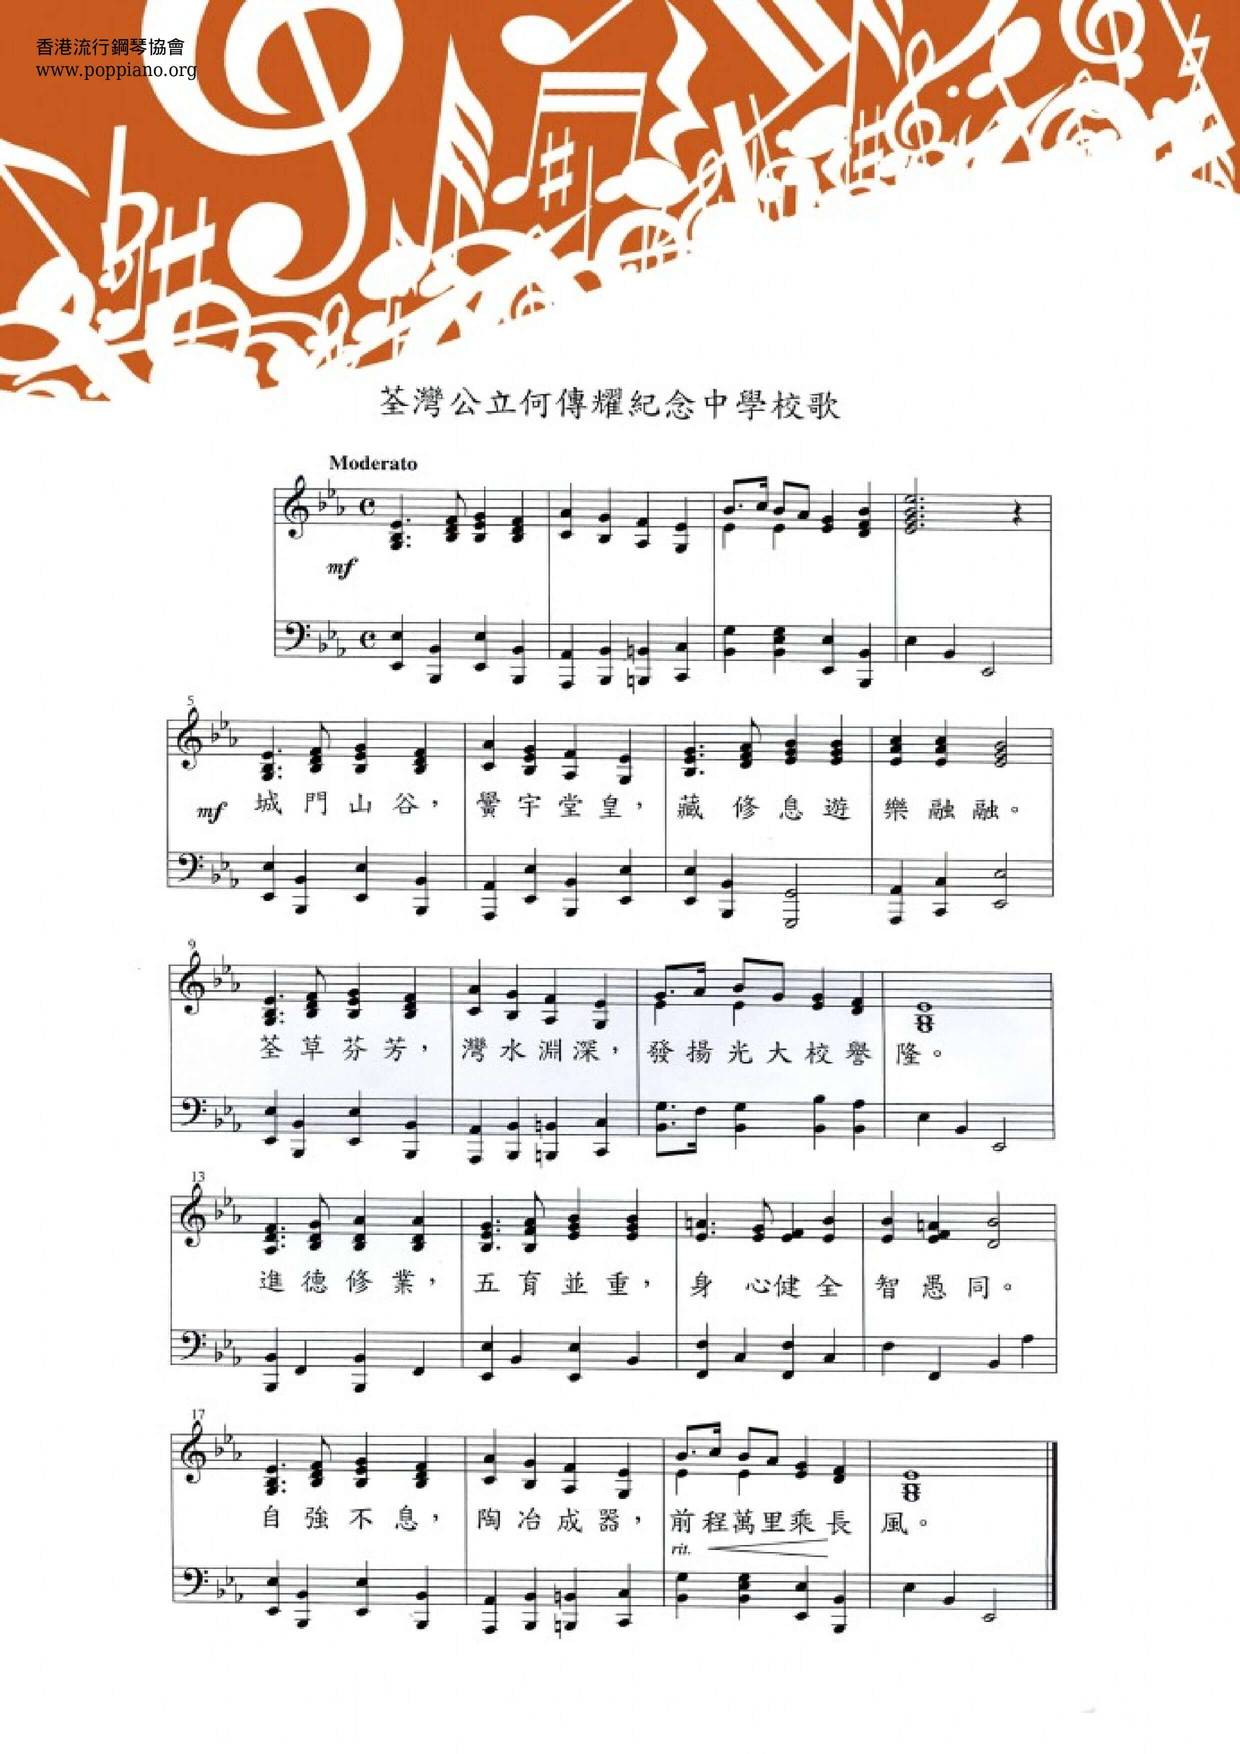 荃湾公立何传耀中学小学校歌琴谱